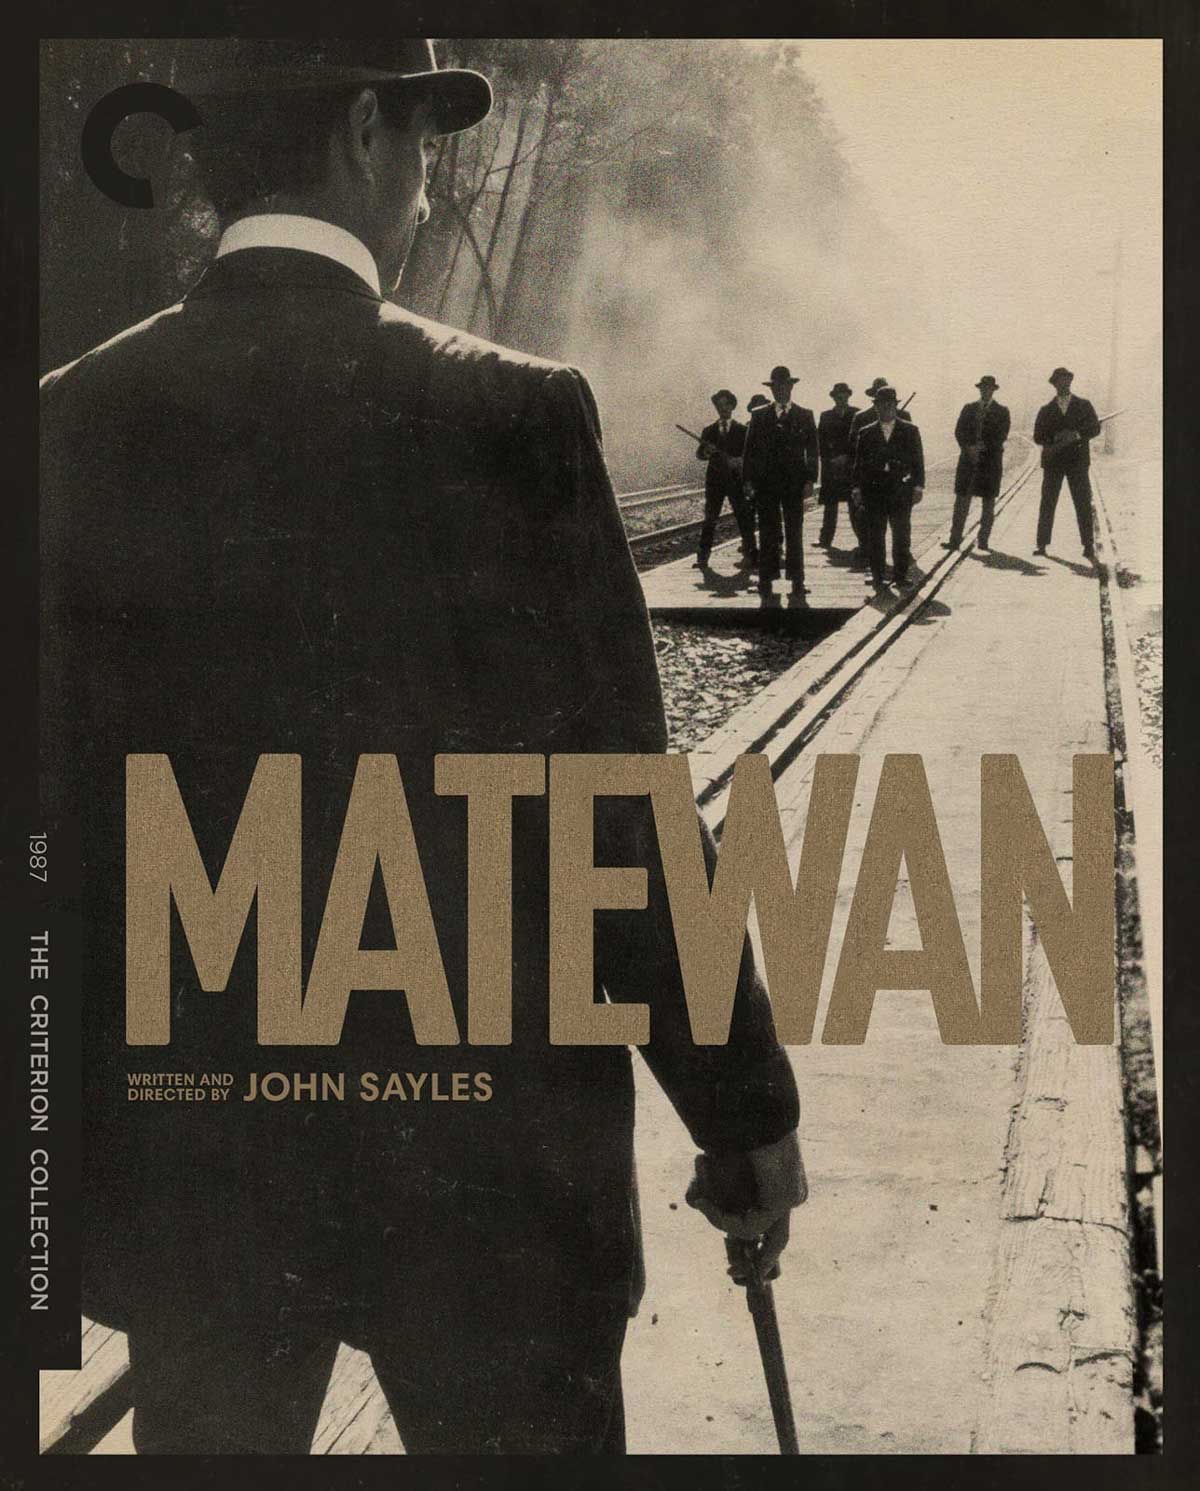 پوستر جذاب فیلم Matewan با نمایش یک تفنگدار در مقابل چند خلافکار کنار ریل قطار